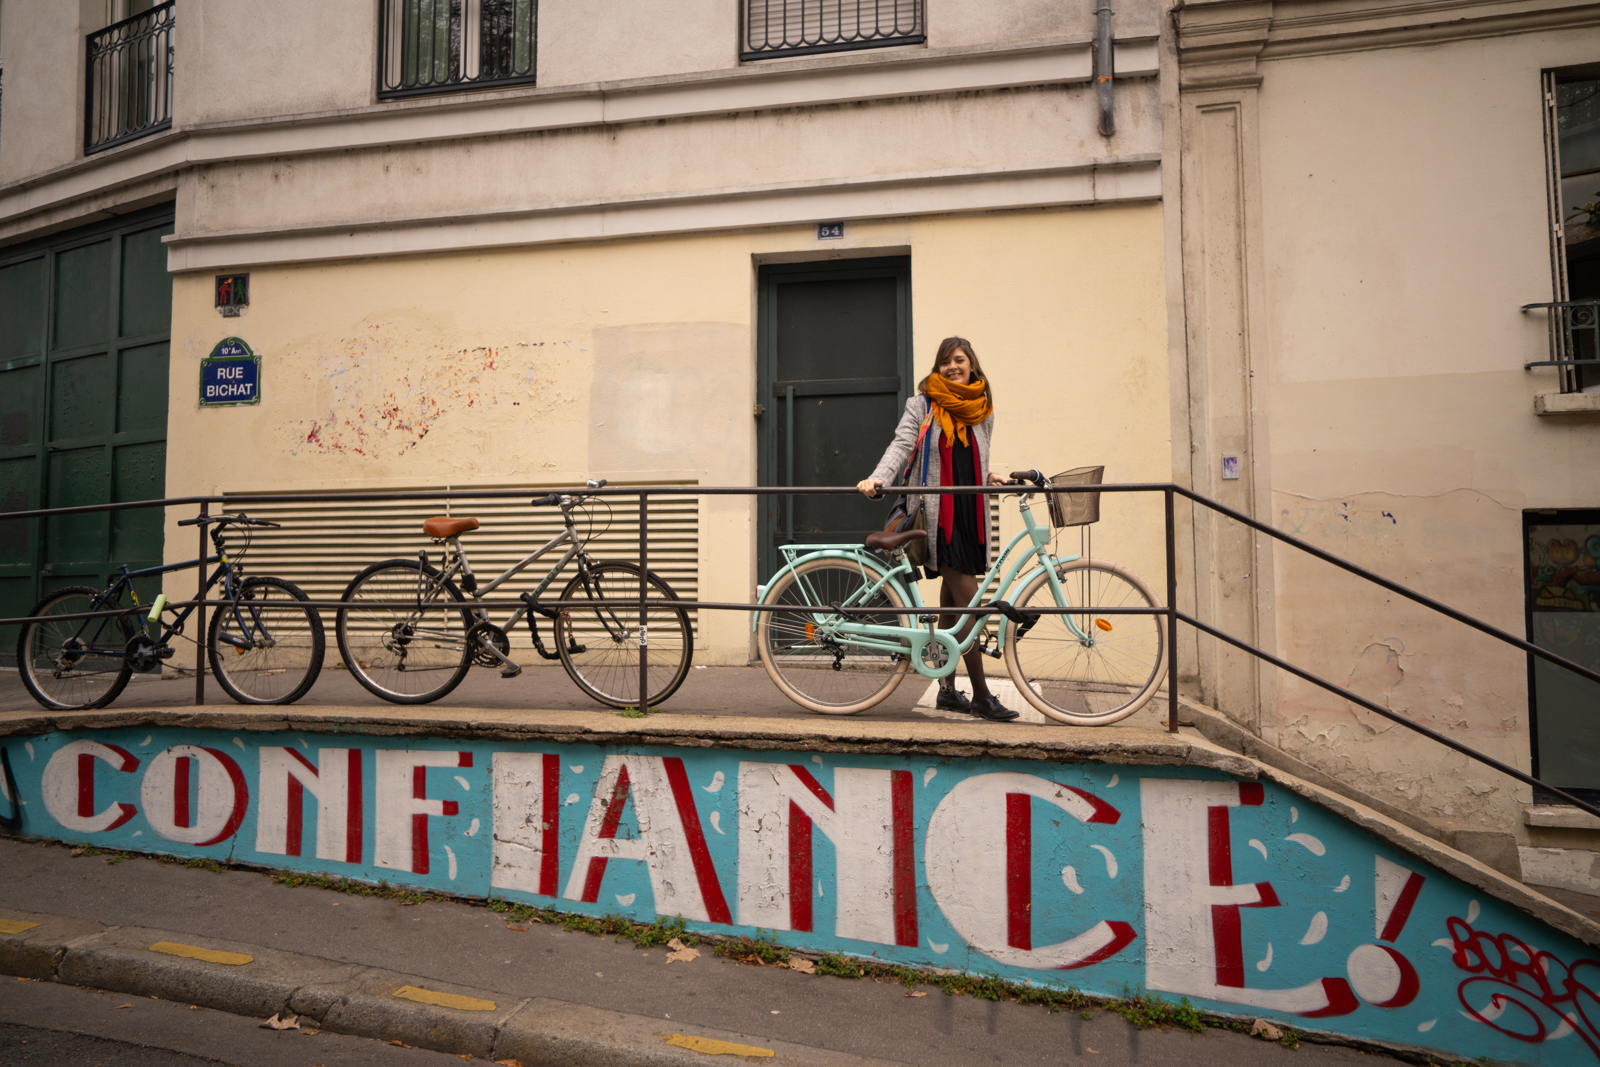 paris, paris 10, quartier canal saint martin, canal saint-martin, paris authentique, visiter paris autrement, paris street art, paris 11e, paris 11 tourisme, balade paris 11, balade paris 10, rue bichat